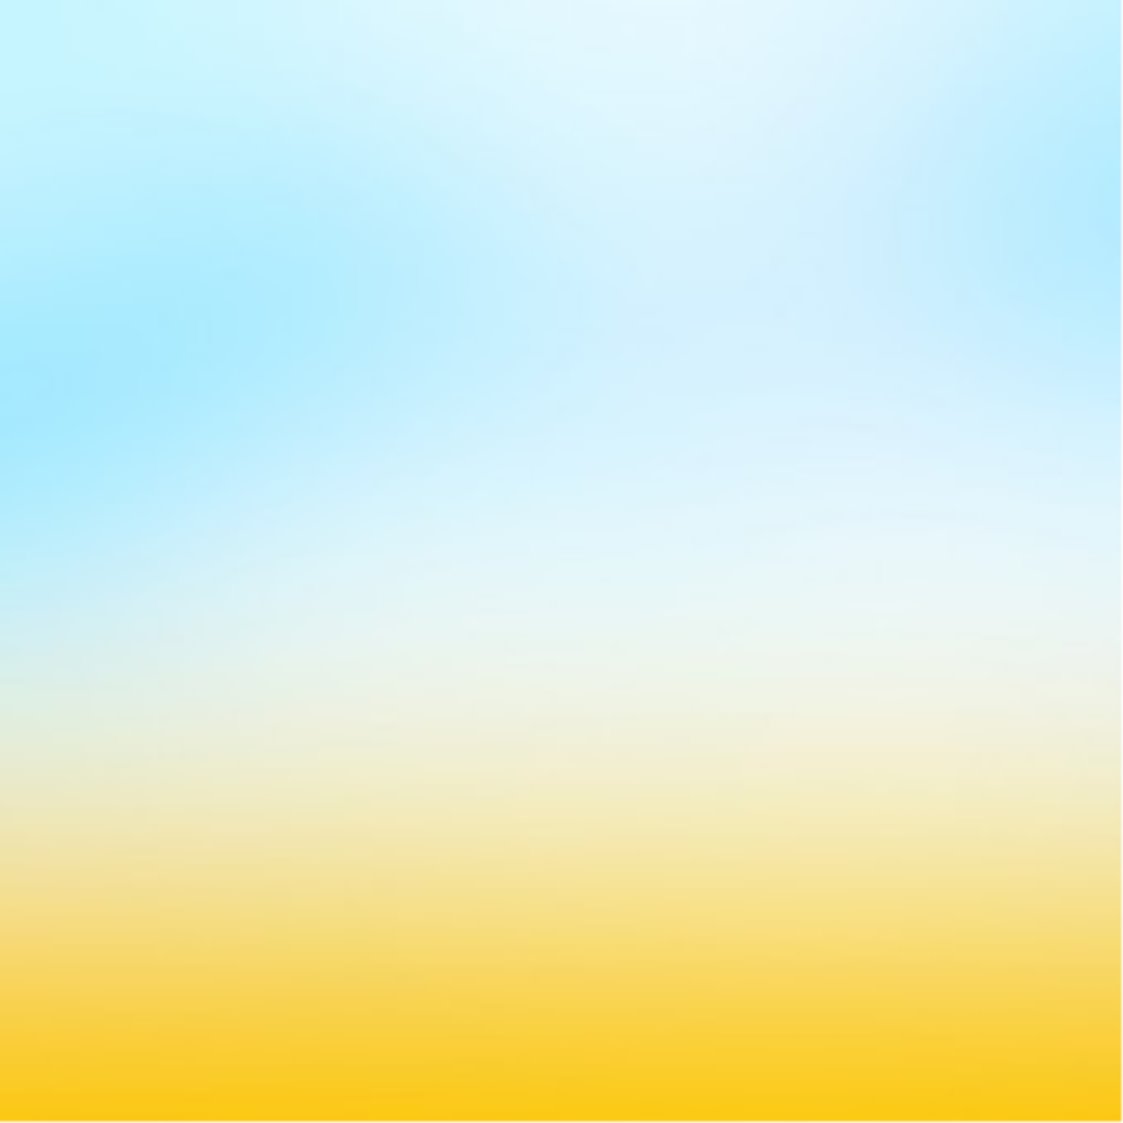 Жовто блакитний: векторные изображения и иллюстрации, которые можно скачать  бесплатно | Freepik